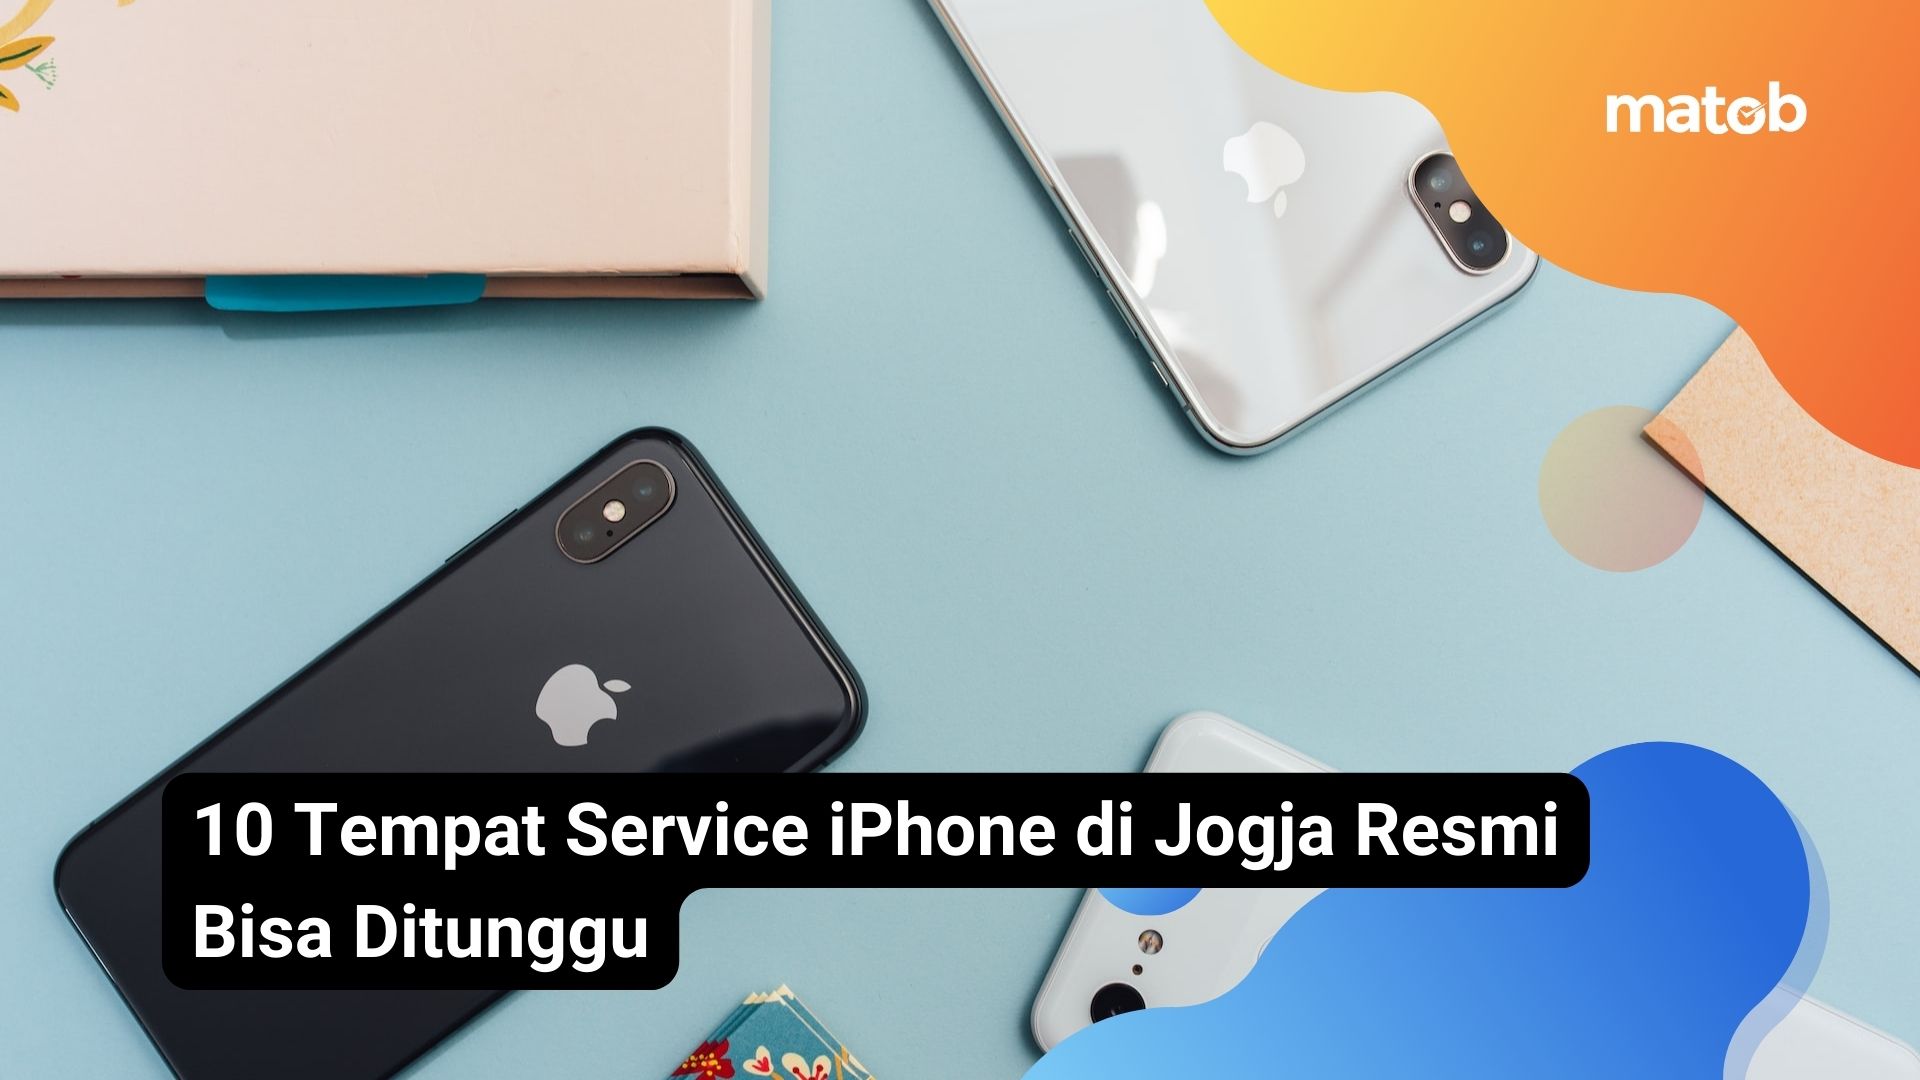 10 Tempat Service iPhone di Jogja Resmi Bisa Ditunggu